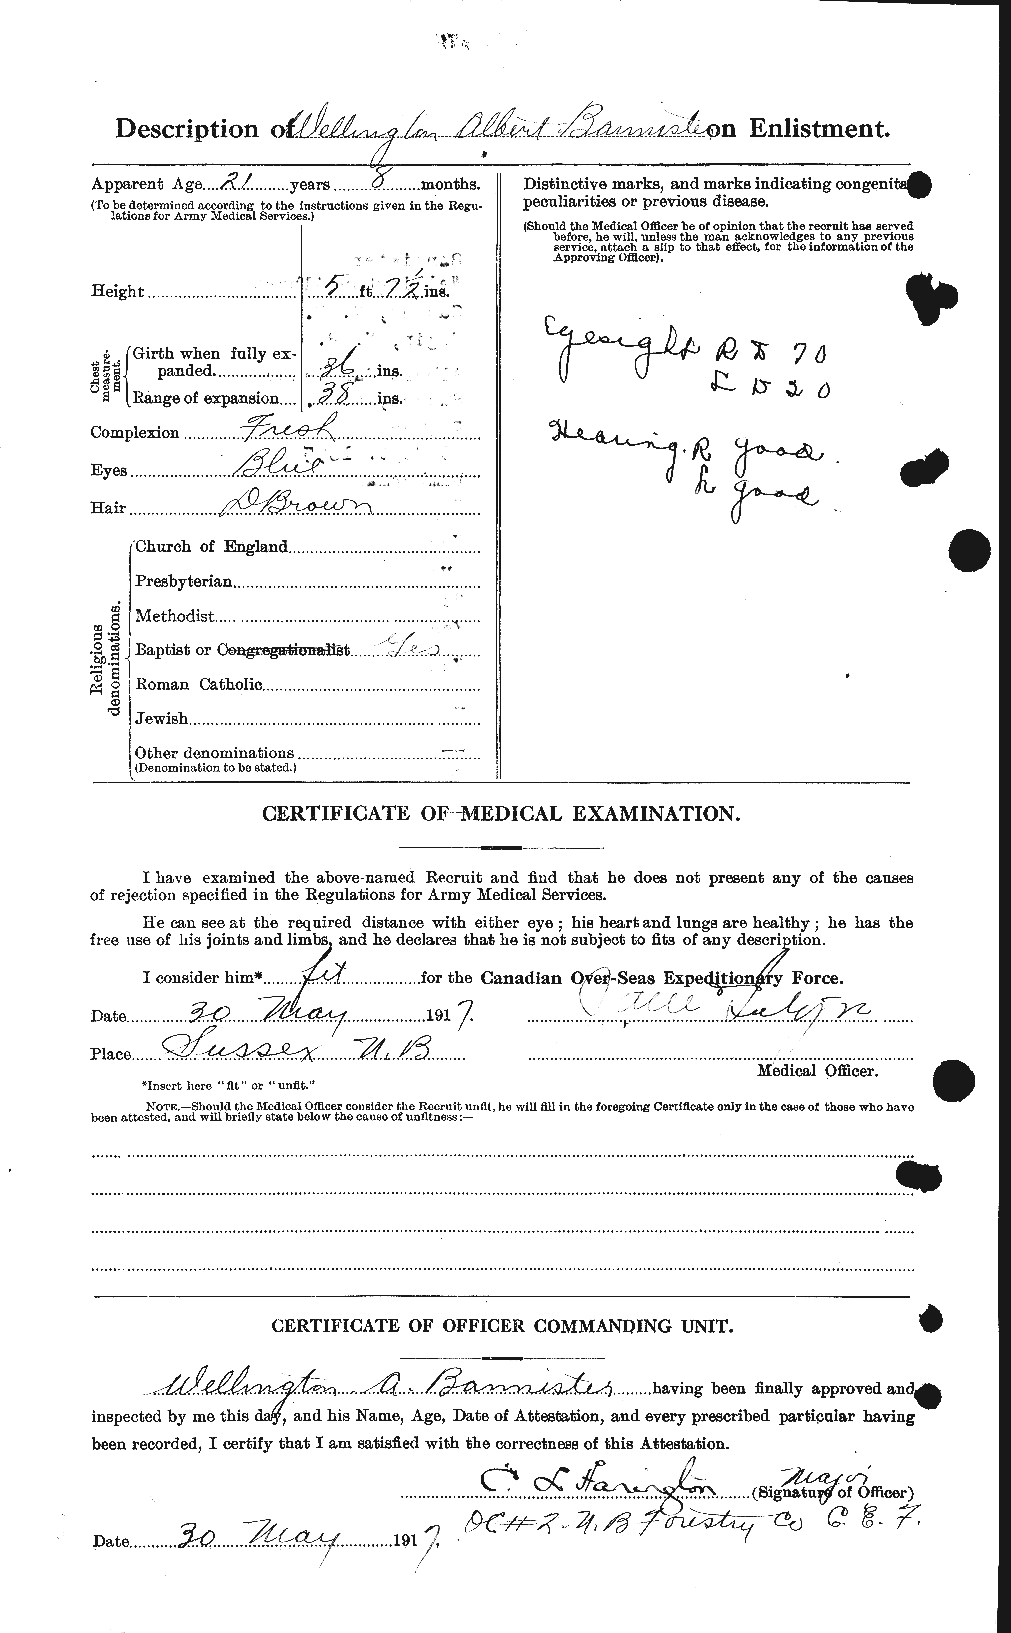 Dossiers du Personnel de la Première Guerre mondiale - CEC 224756b